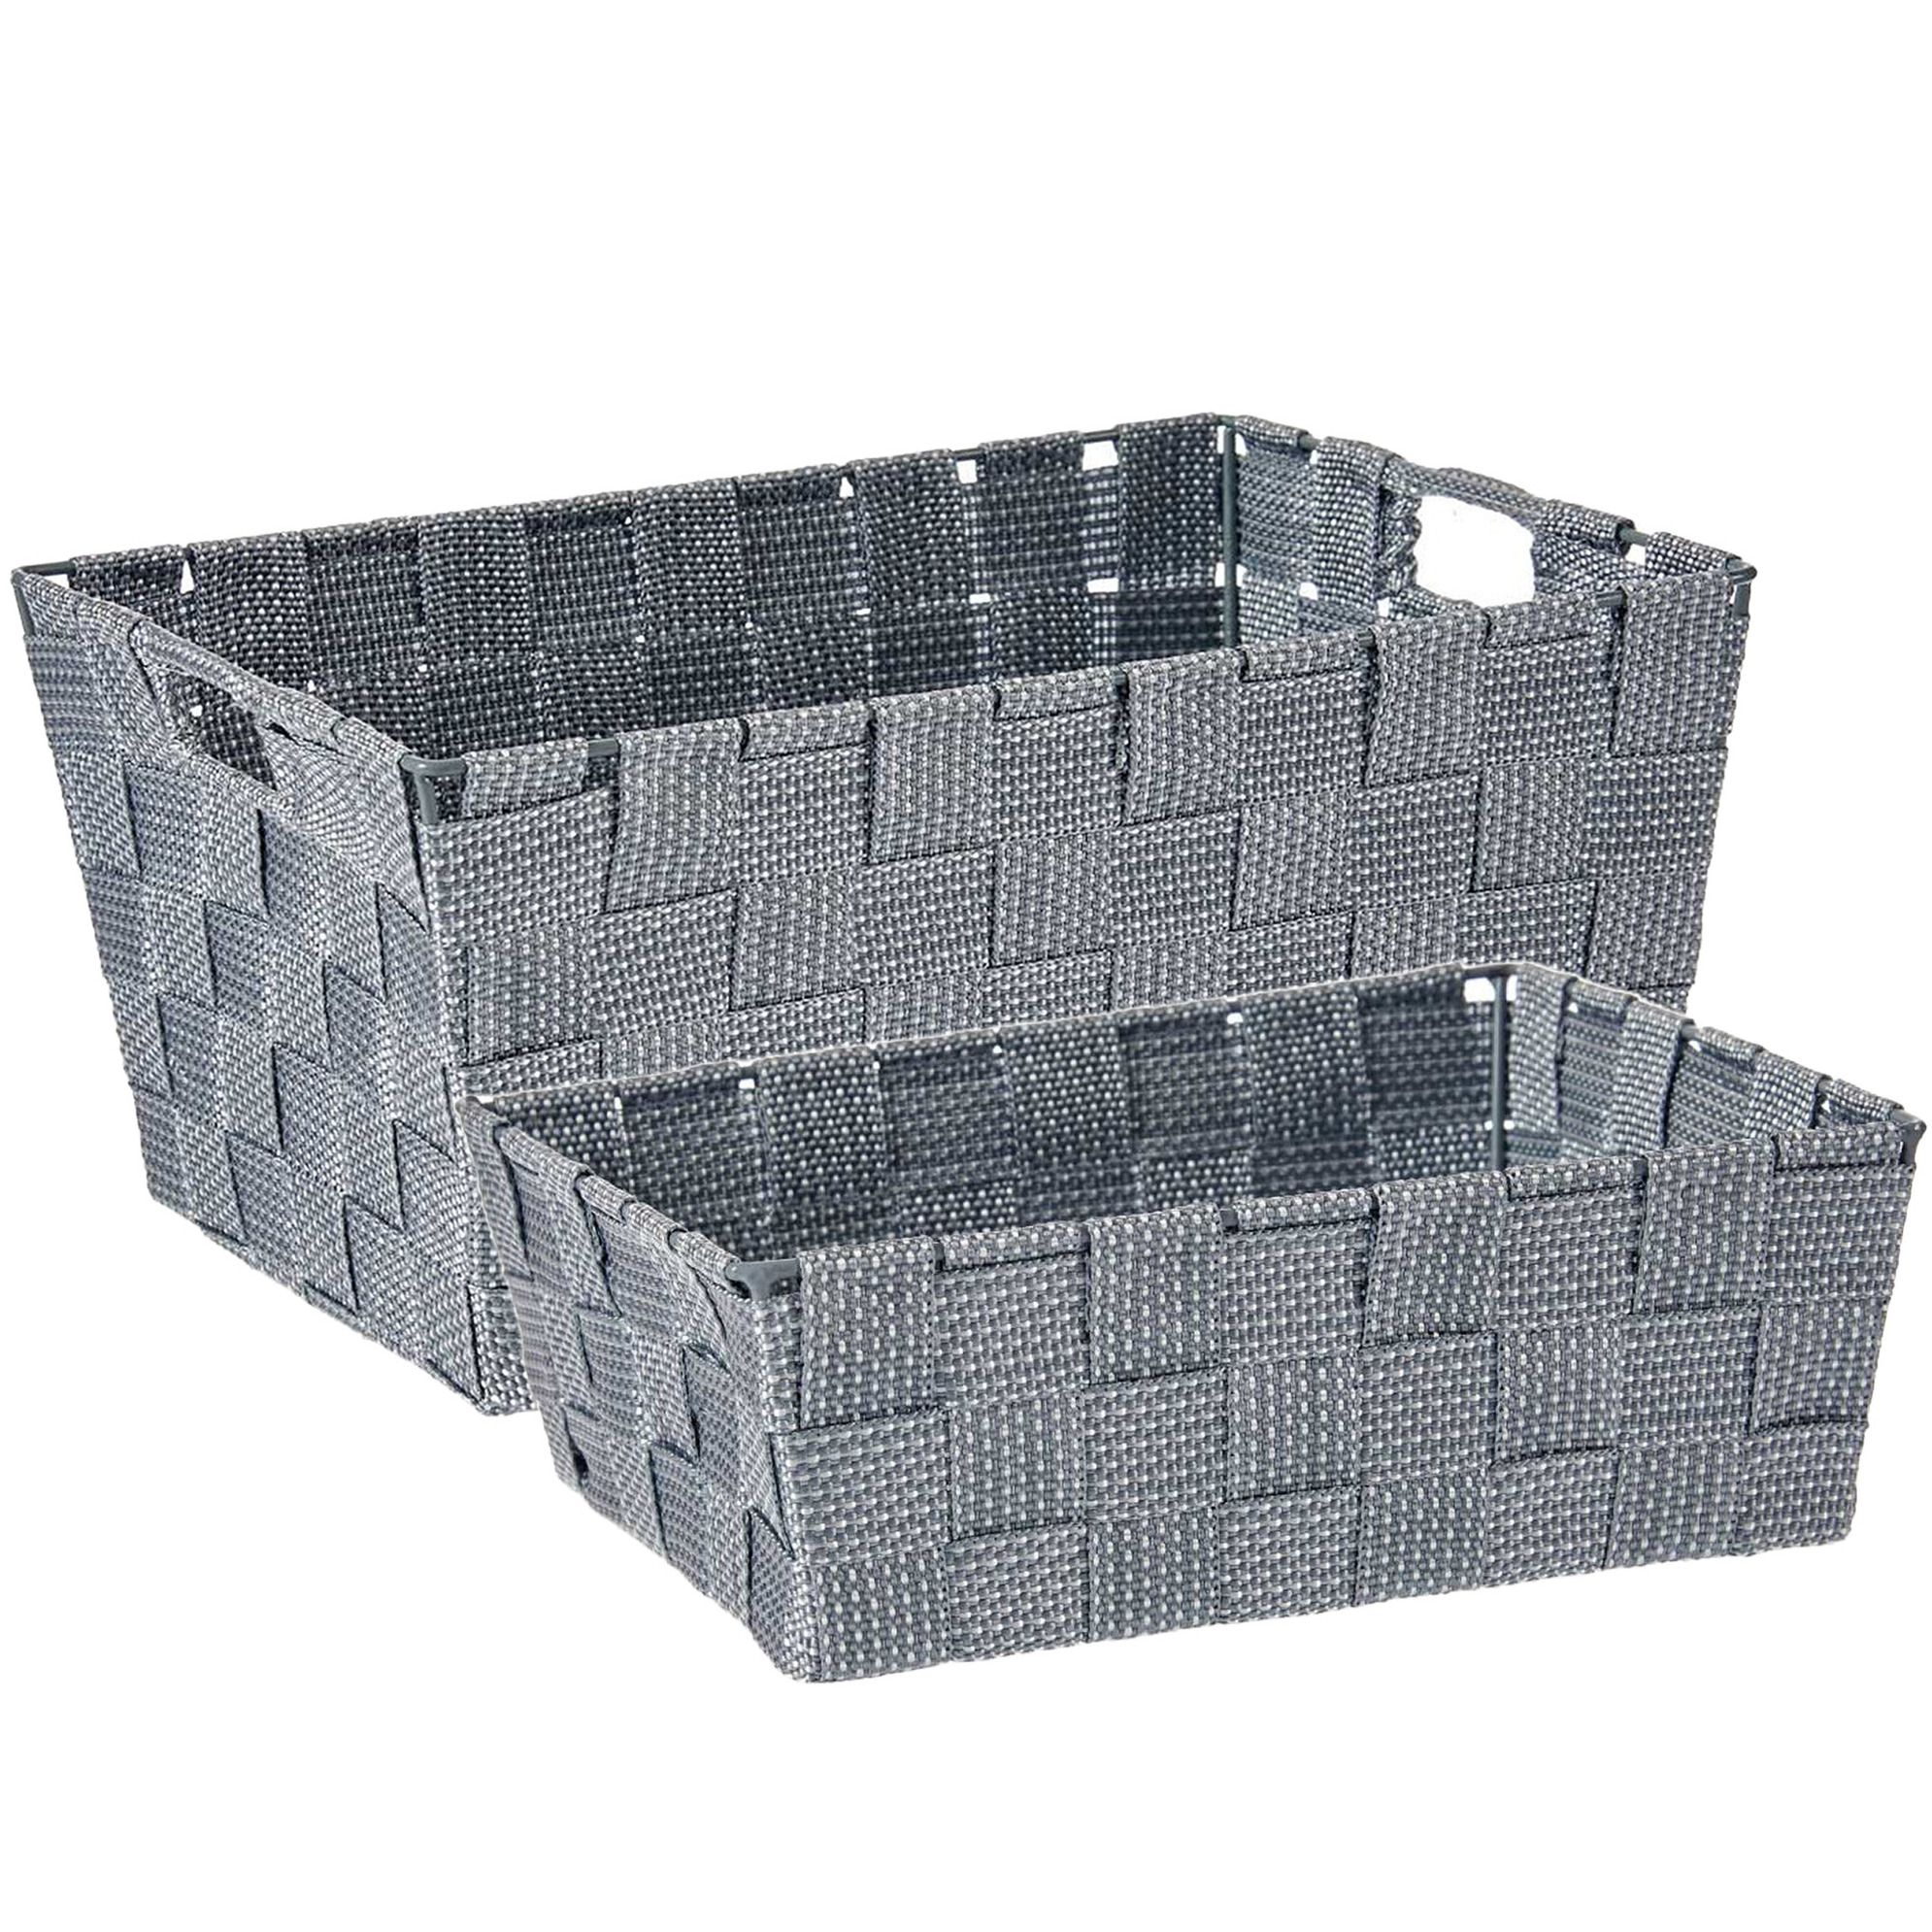 Kast-badkamer opbergmandjes set van 4x stuks zilvergrijs in 2 formaten